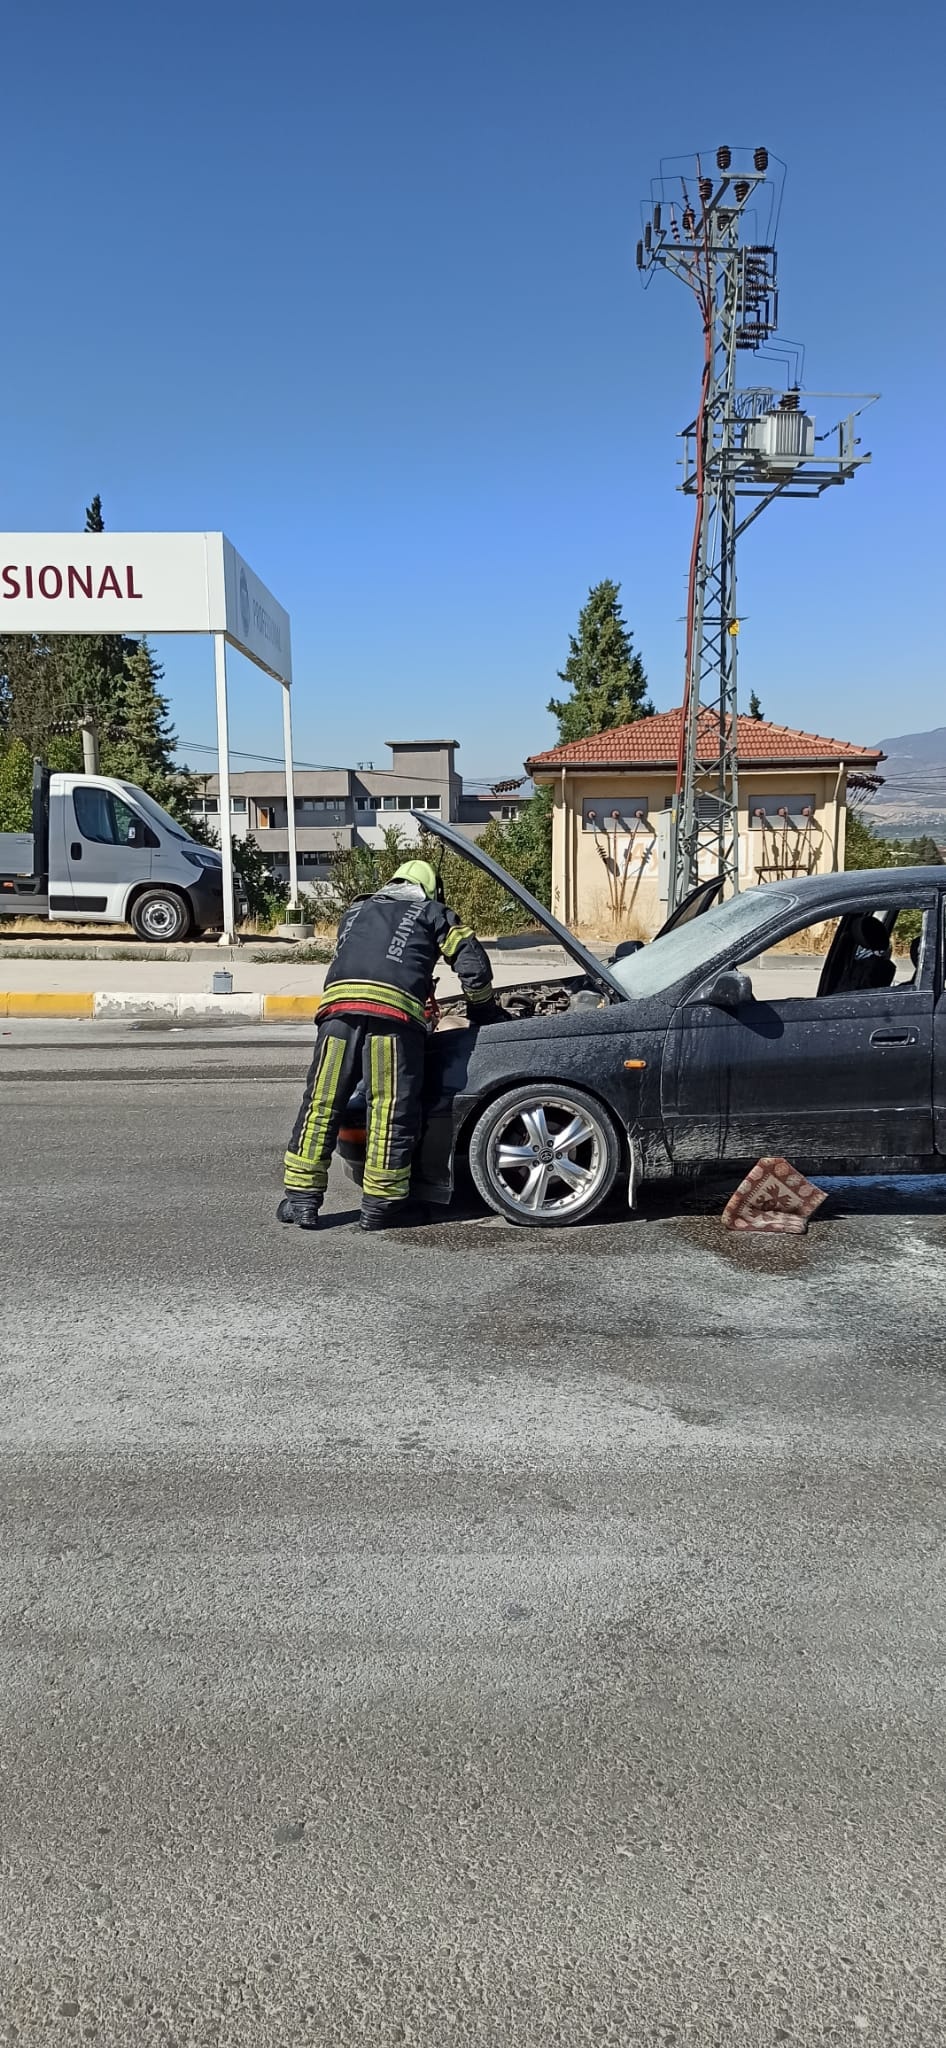 Denizli'nin Pamukkale İlçesi'nde seyir halinde giden araçta yangın meydana geldi. Araç yangını itfaiye ekipleri tarafından söndürüldü.